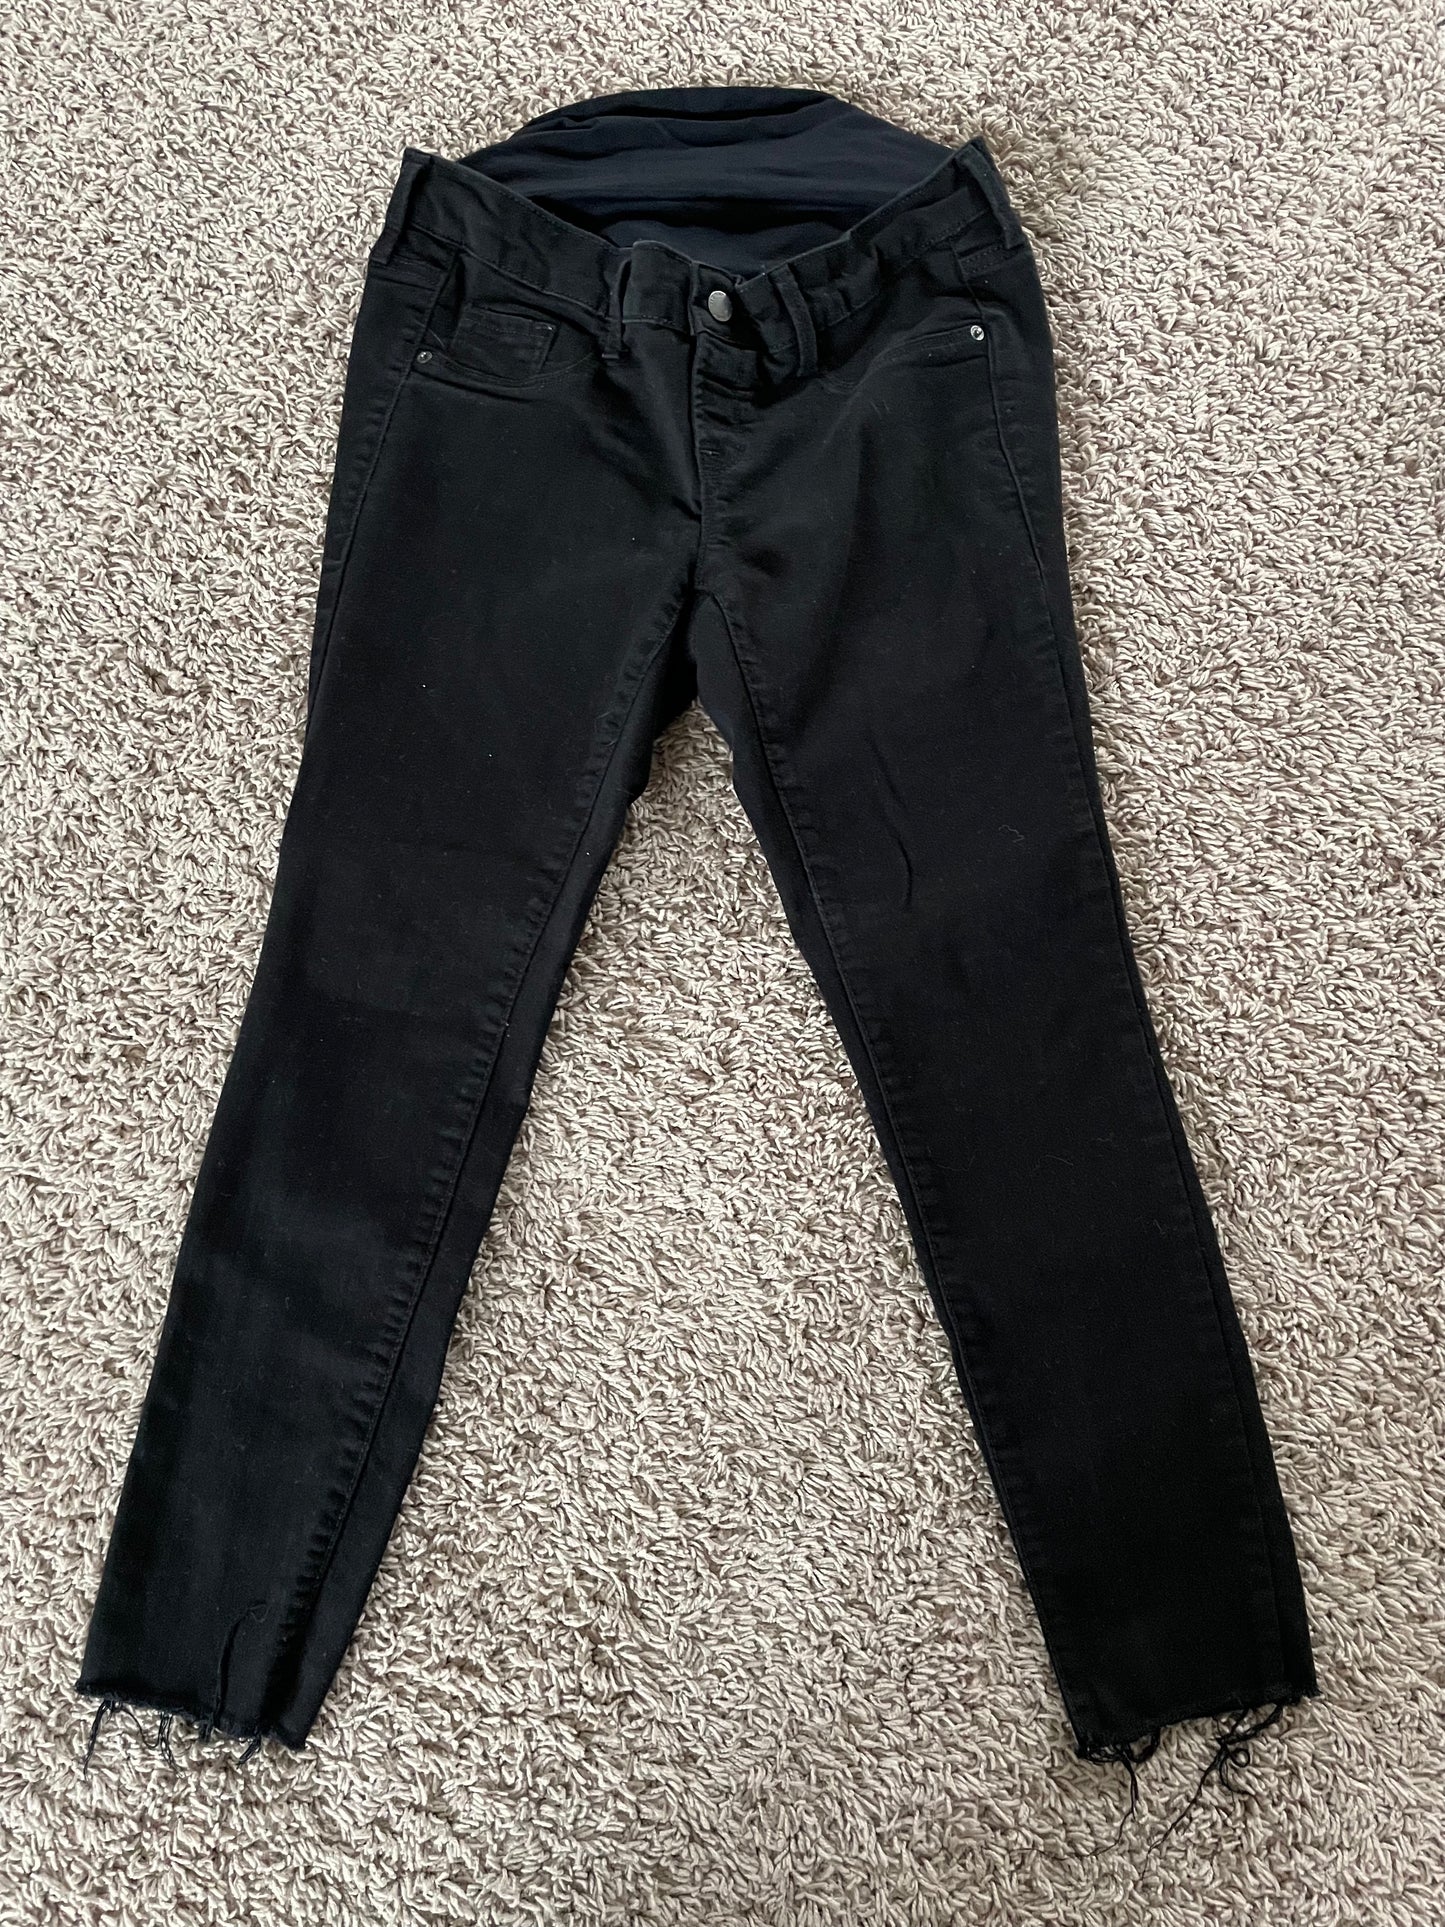 Old Navy - Size 4 short - Black maternity jeans